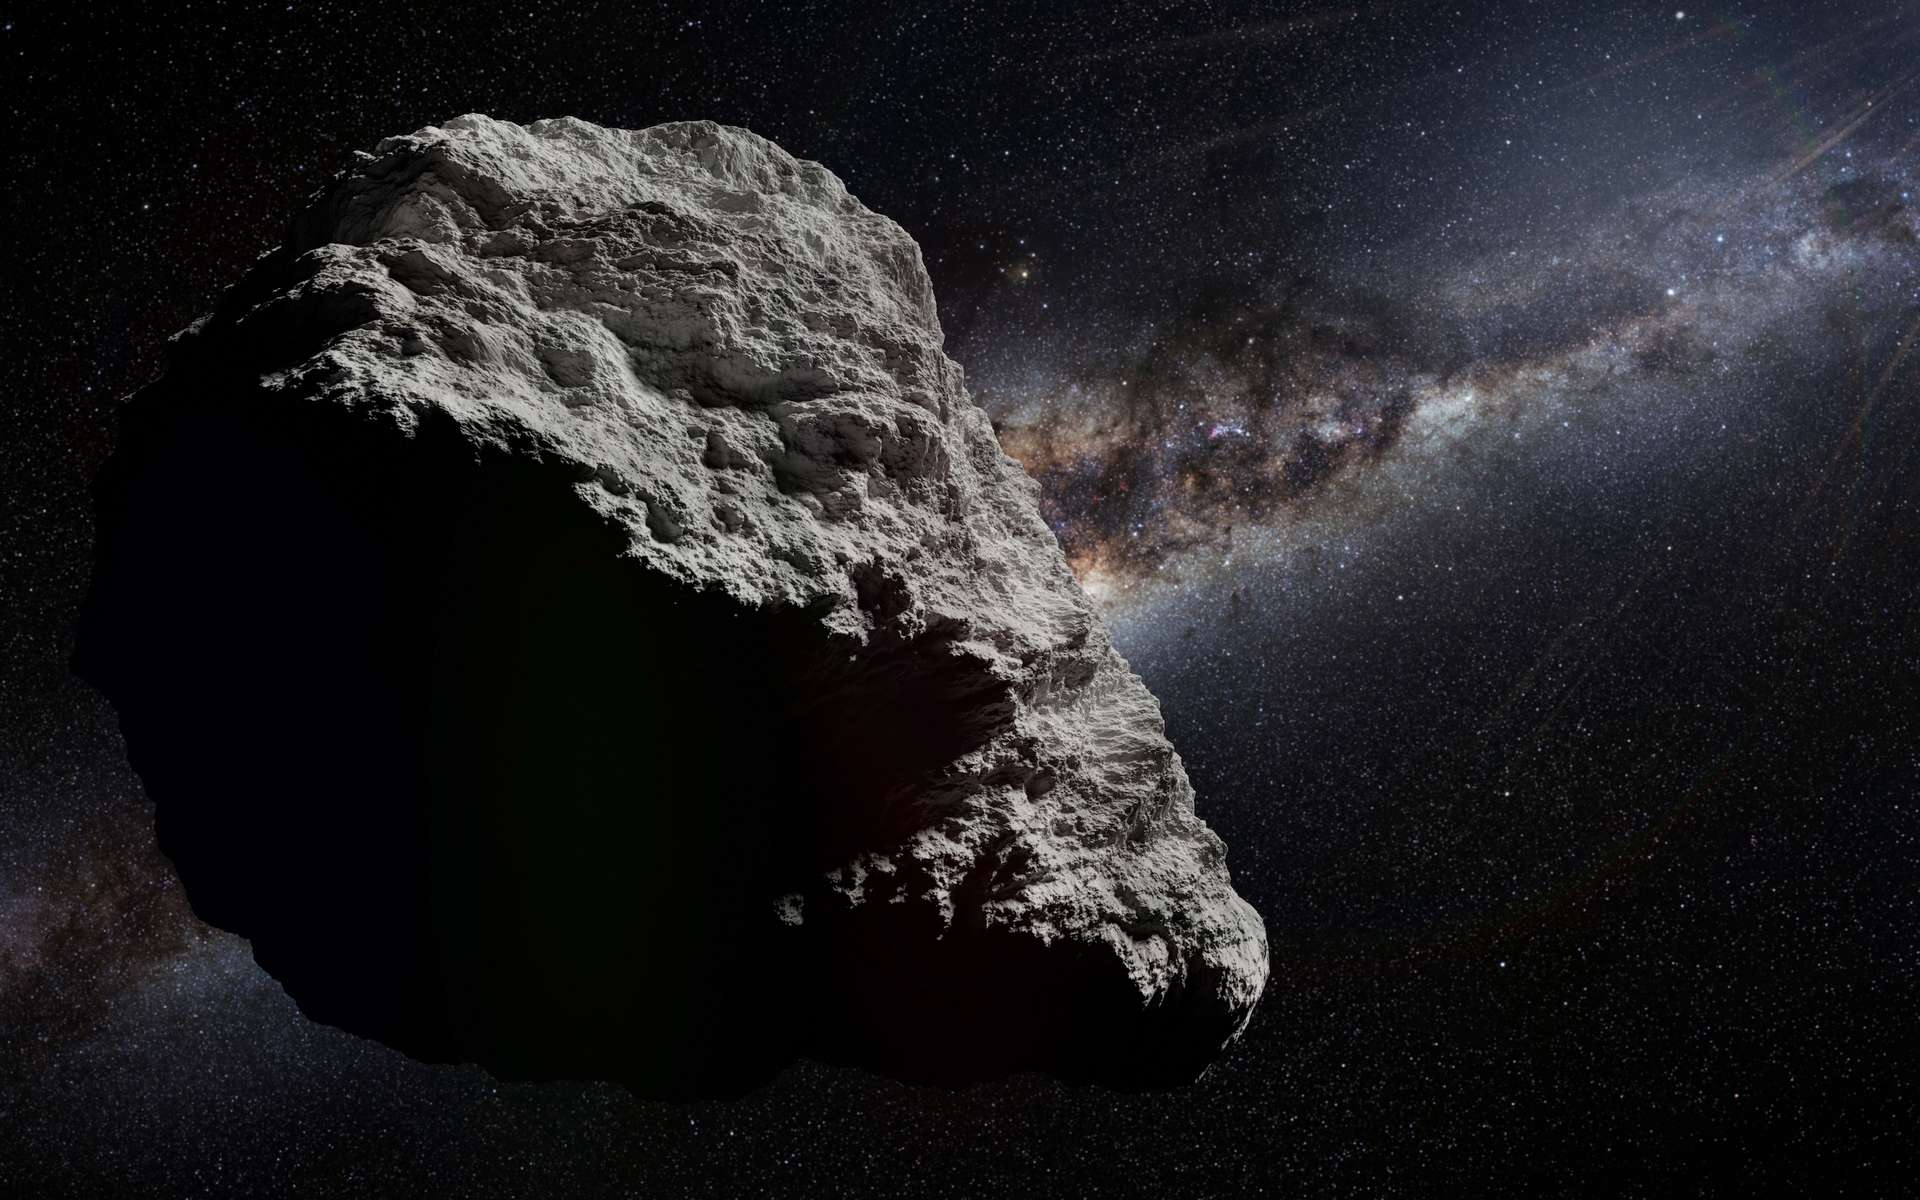 Des chercheurs affirment avoir découvert des acides aminés dans les échantillons de l’astéroïde Ryugu ramenés sur Terre. Illustration d'un astéroïde. © dottedyeti, Adobe Stock